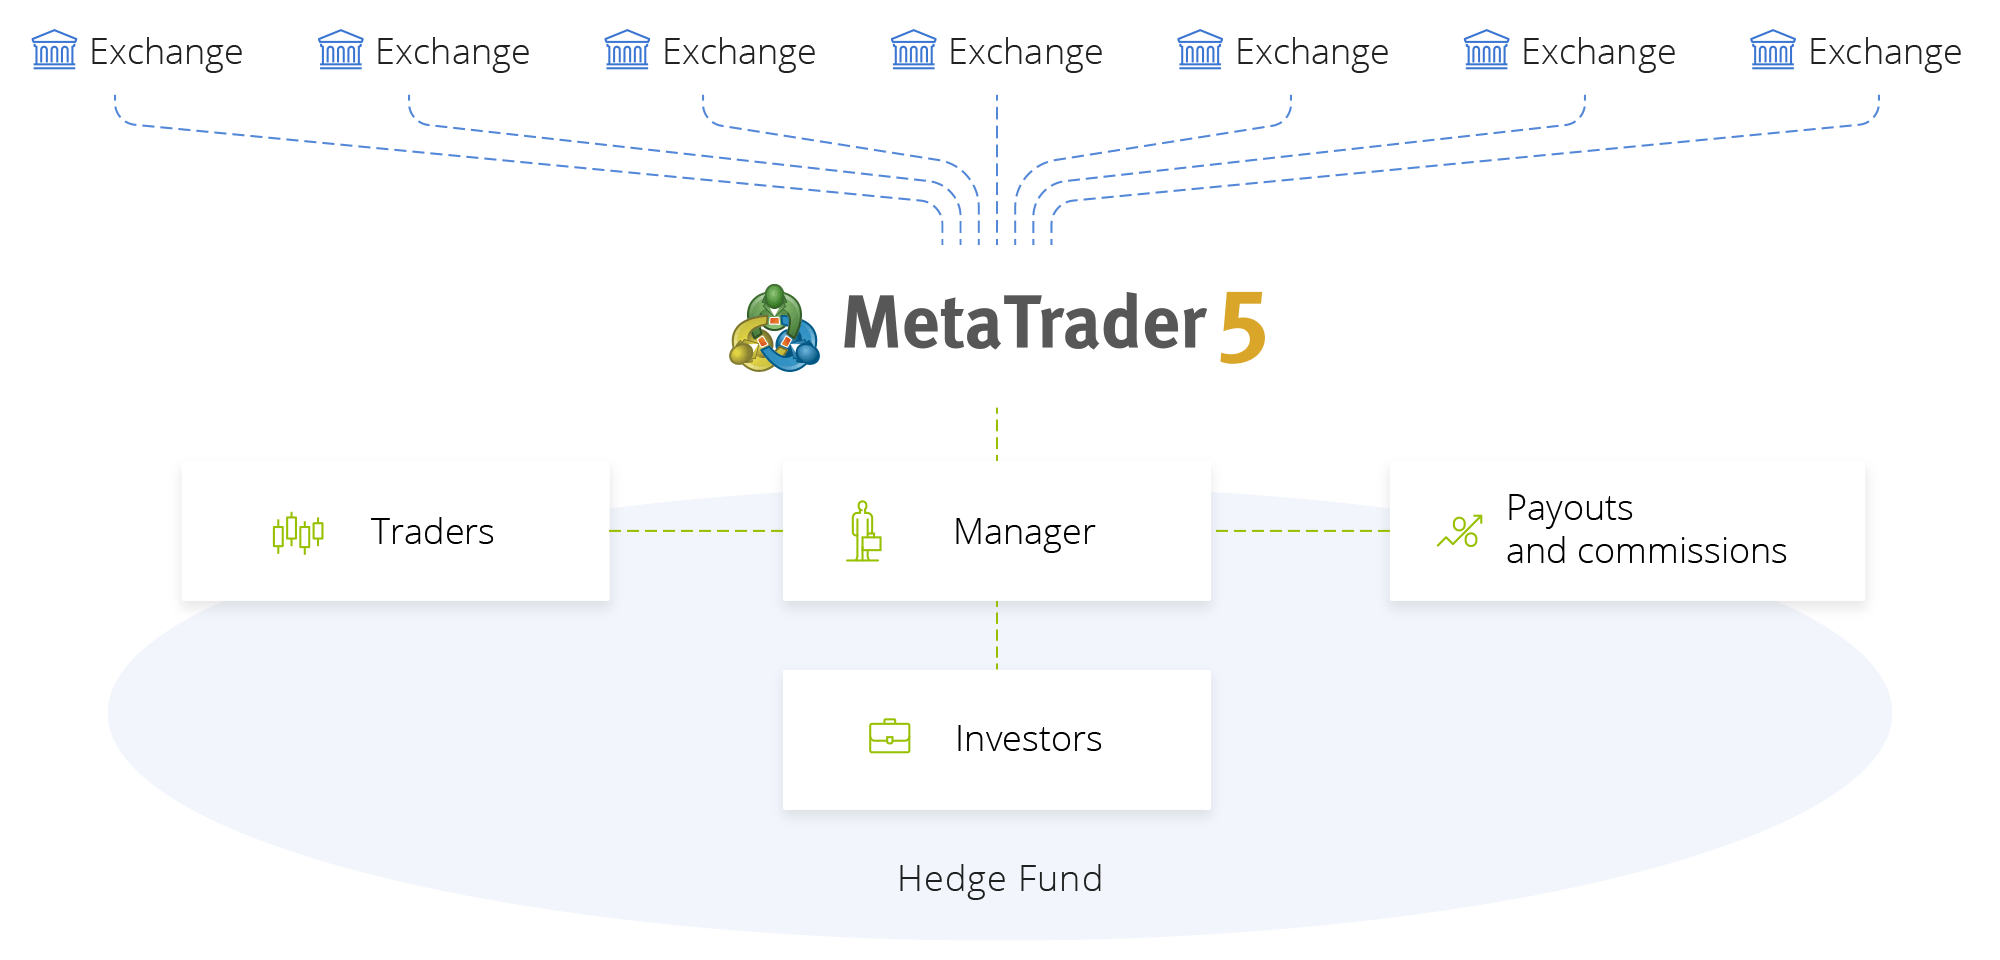 MetaTrader 5是一个集成风险管理和分析功能的交易所程序端